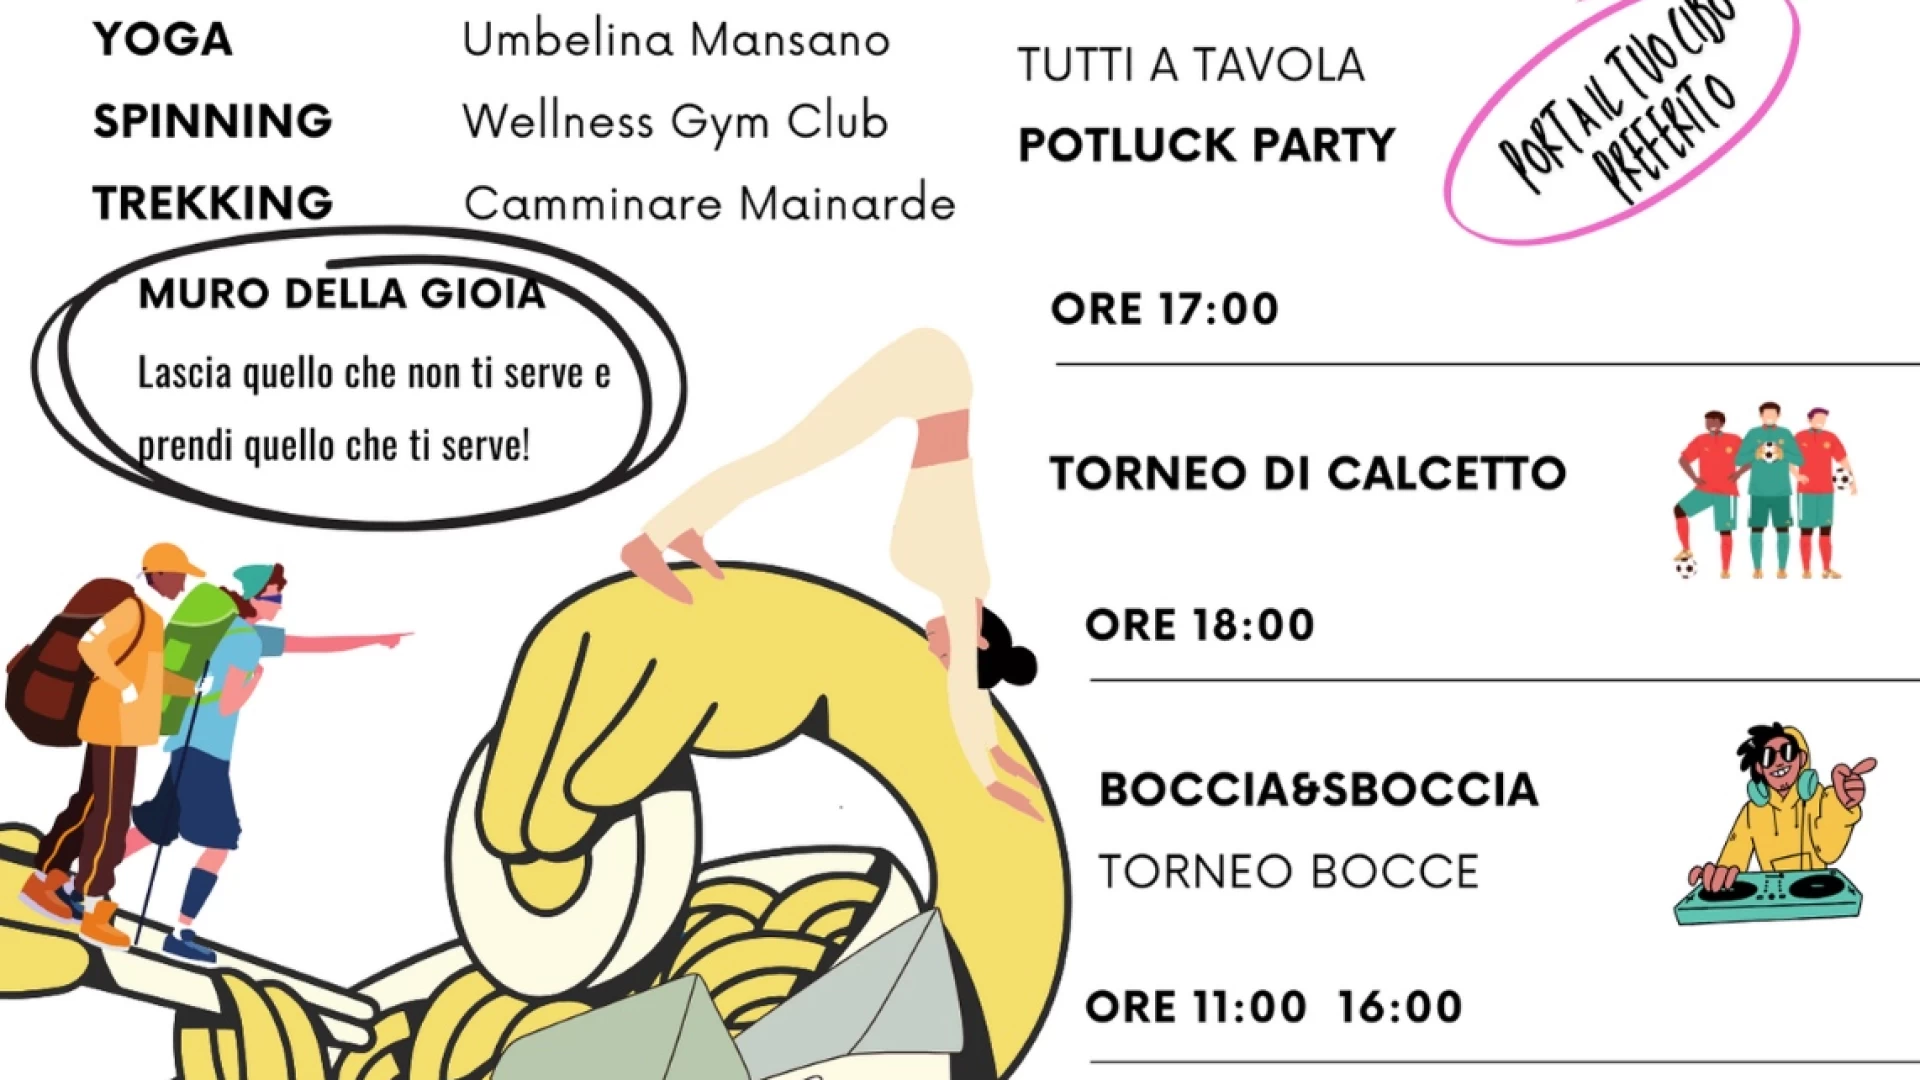 Evento “Boccia e Sboccia”: Una Giornata di Sport e Condivisione a Castelnuovo al Volturno organizzato dal comitato spontaneo MIA